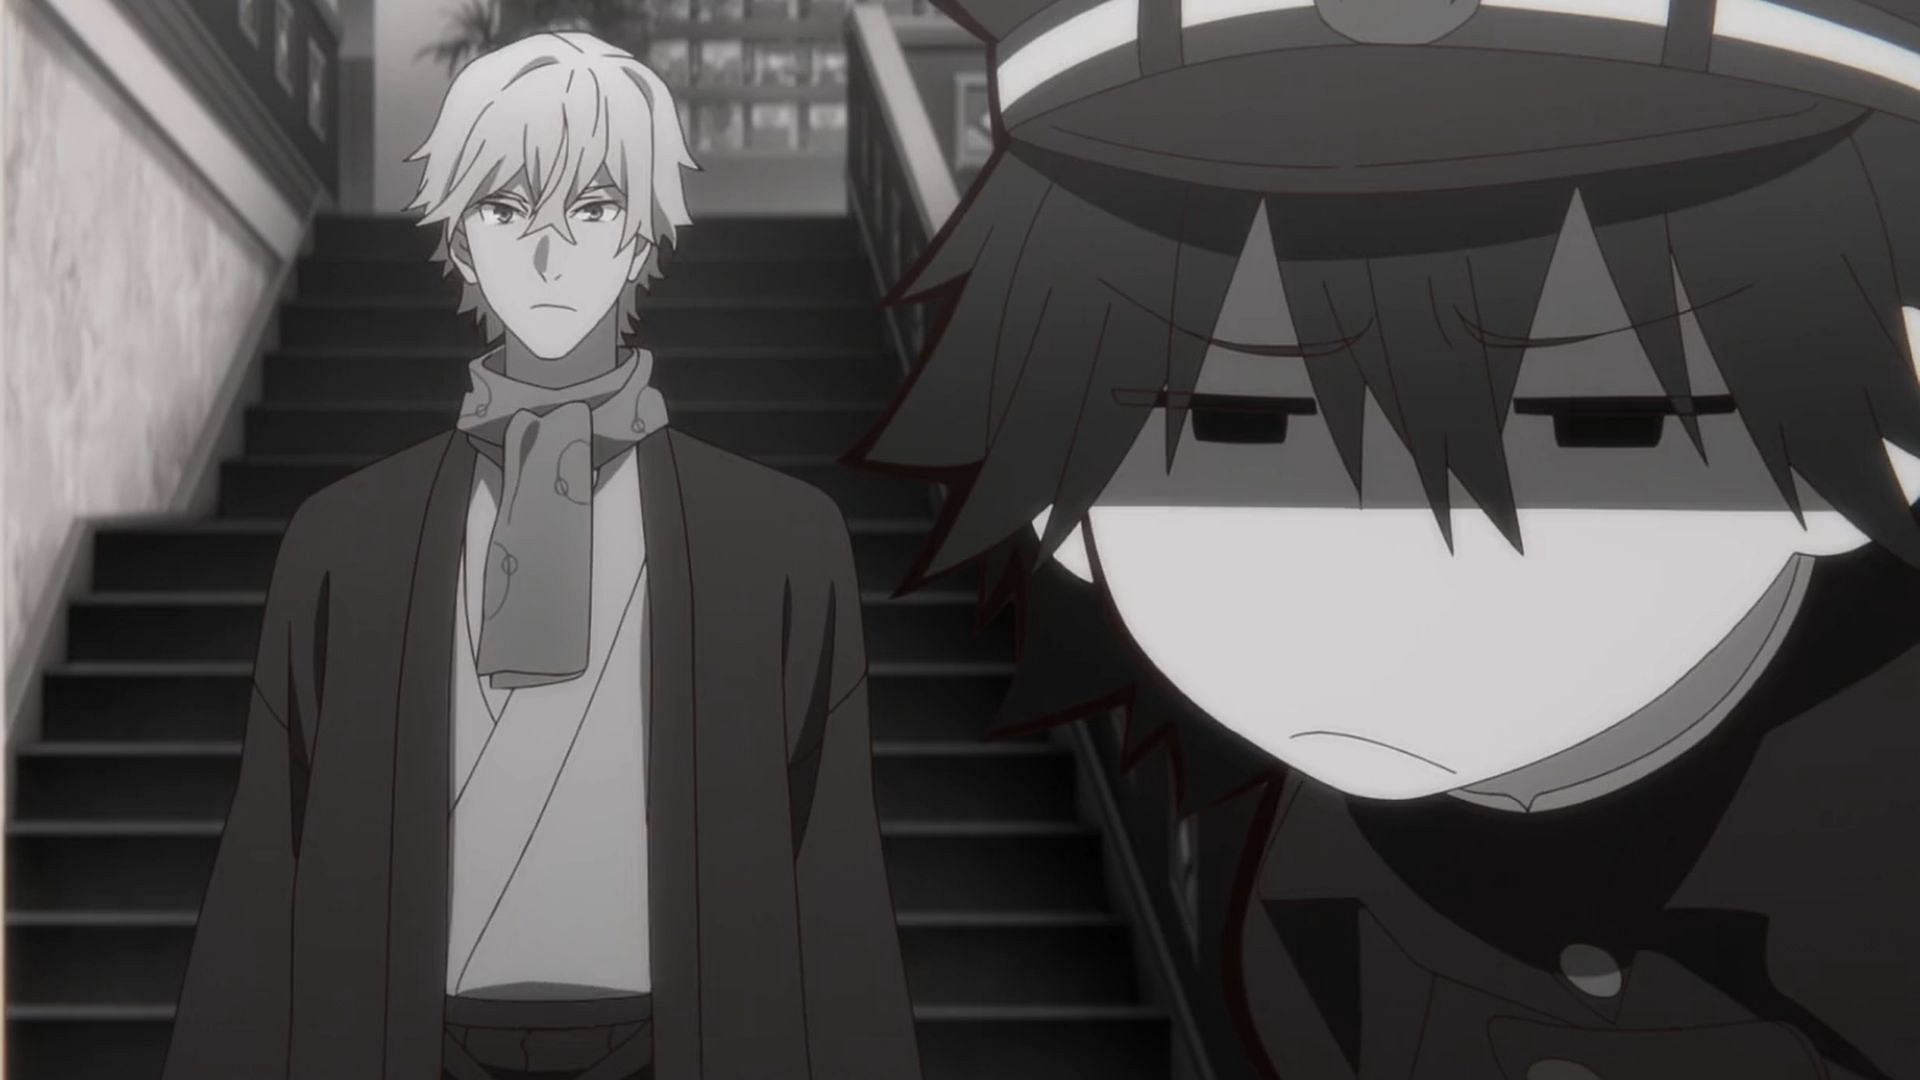 Fukuzawa and Edogawa as seen in the anime (Image via BONES)